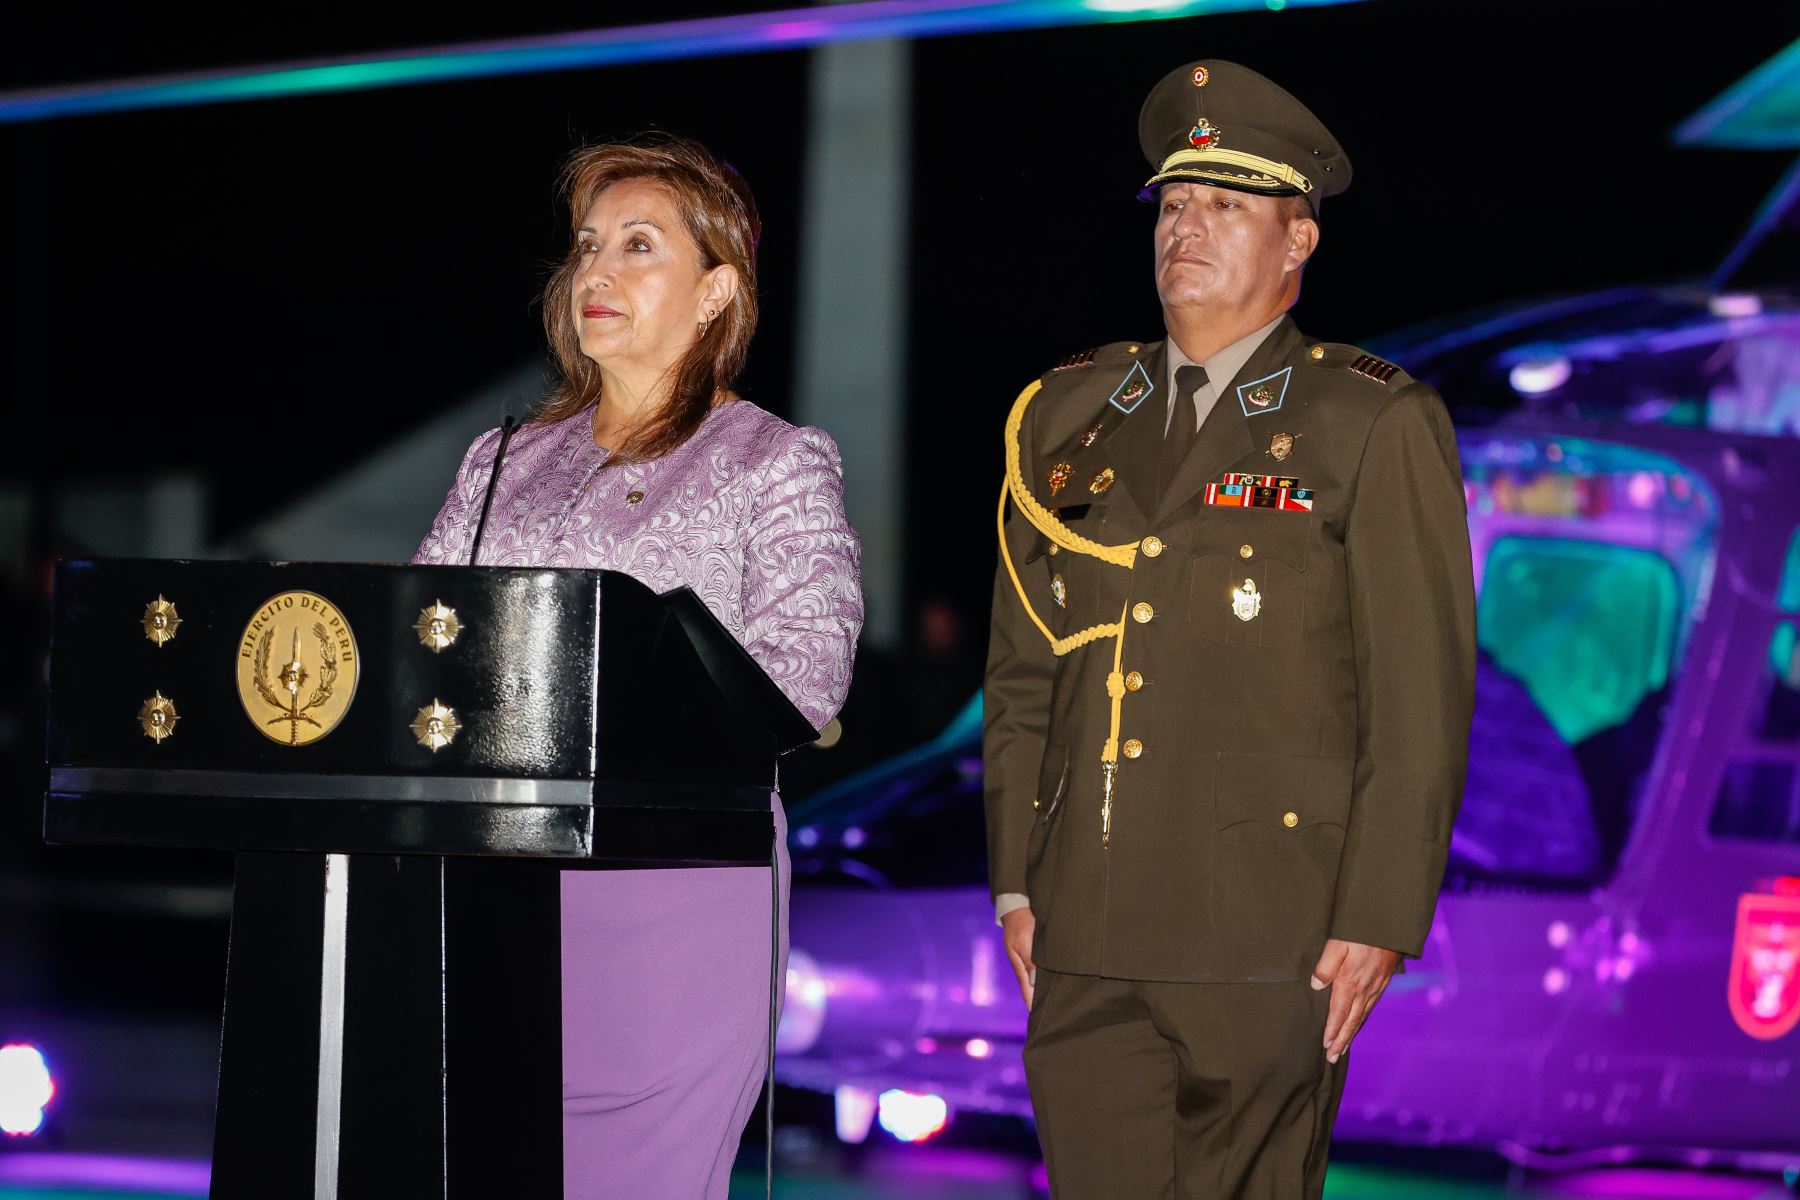 La jefa de Estado, Dina Boluarte, junto con el ministro de Defensa, Jorge Chávez Cresta y los altos mandos militares y otras autoridades, participó en la ceremonia por el 50.º aniversario de creación de la Aviación del Ejército del Perú.
Foto: ANDINA/Presidencia Perú